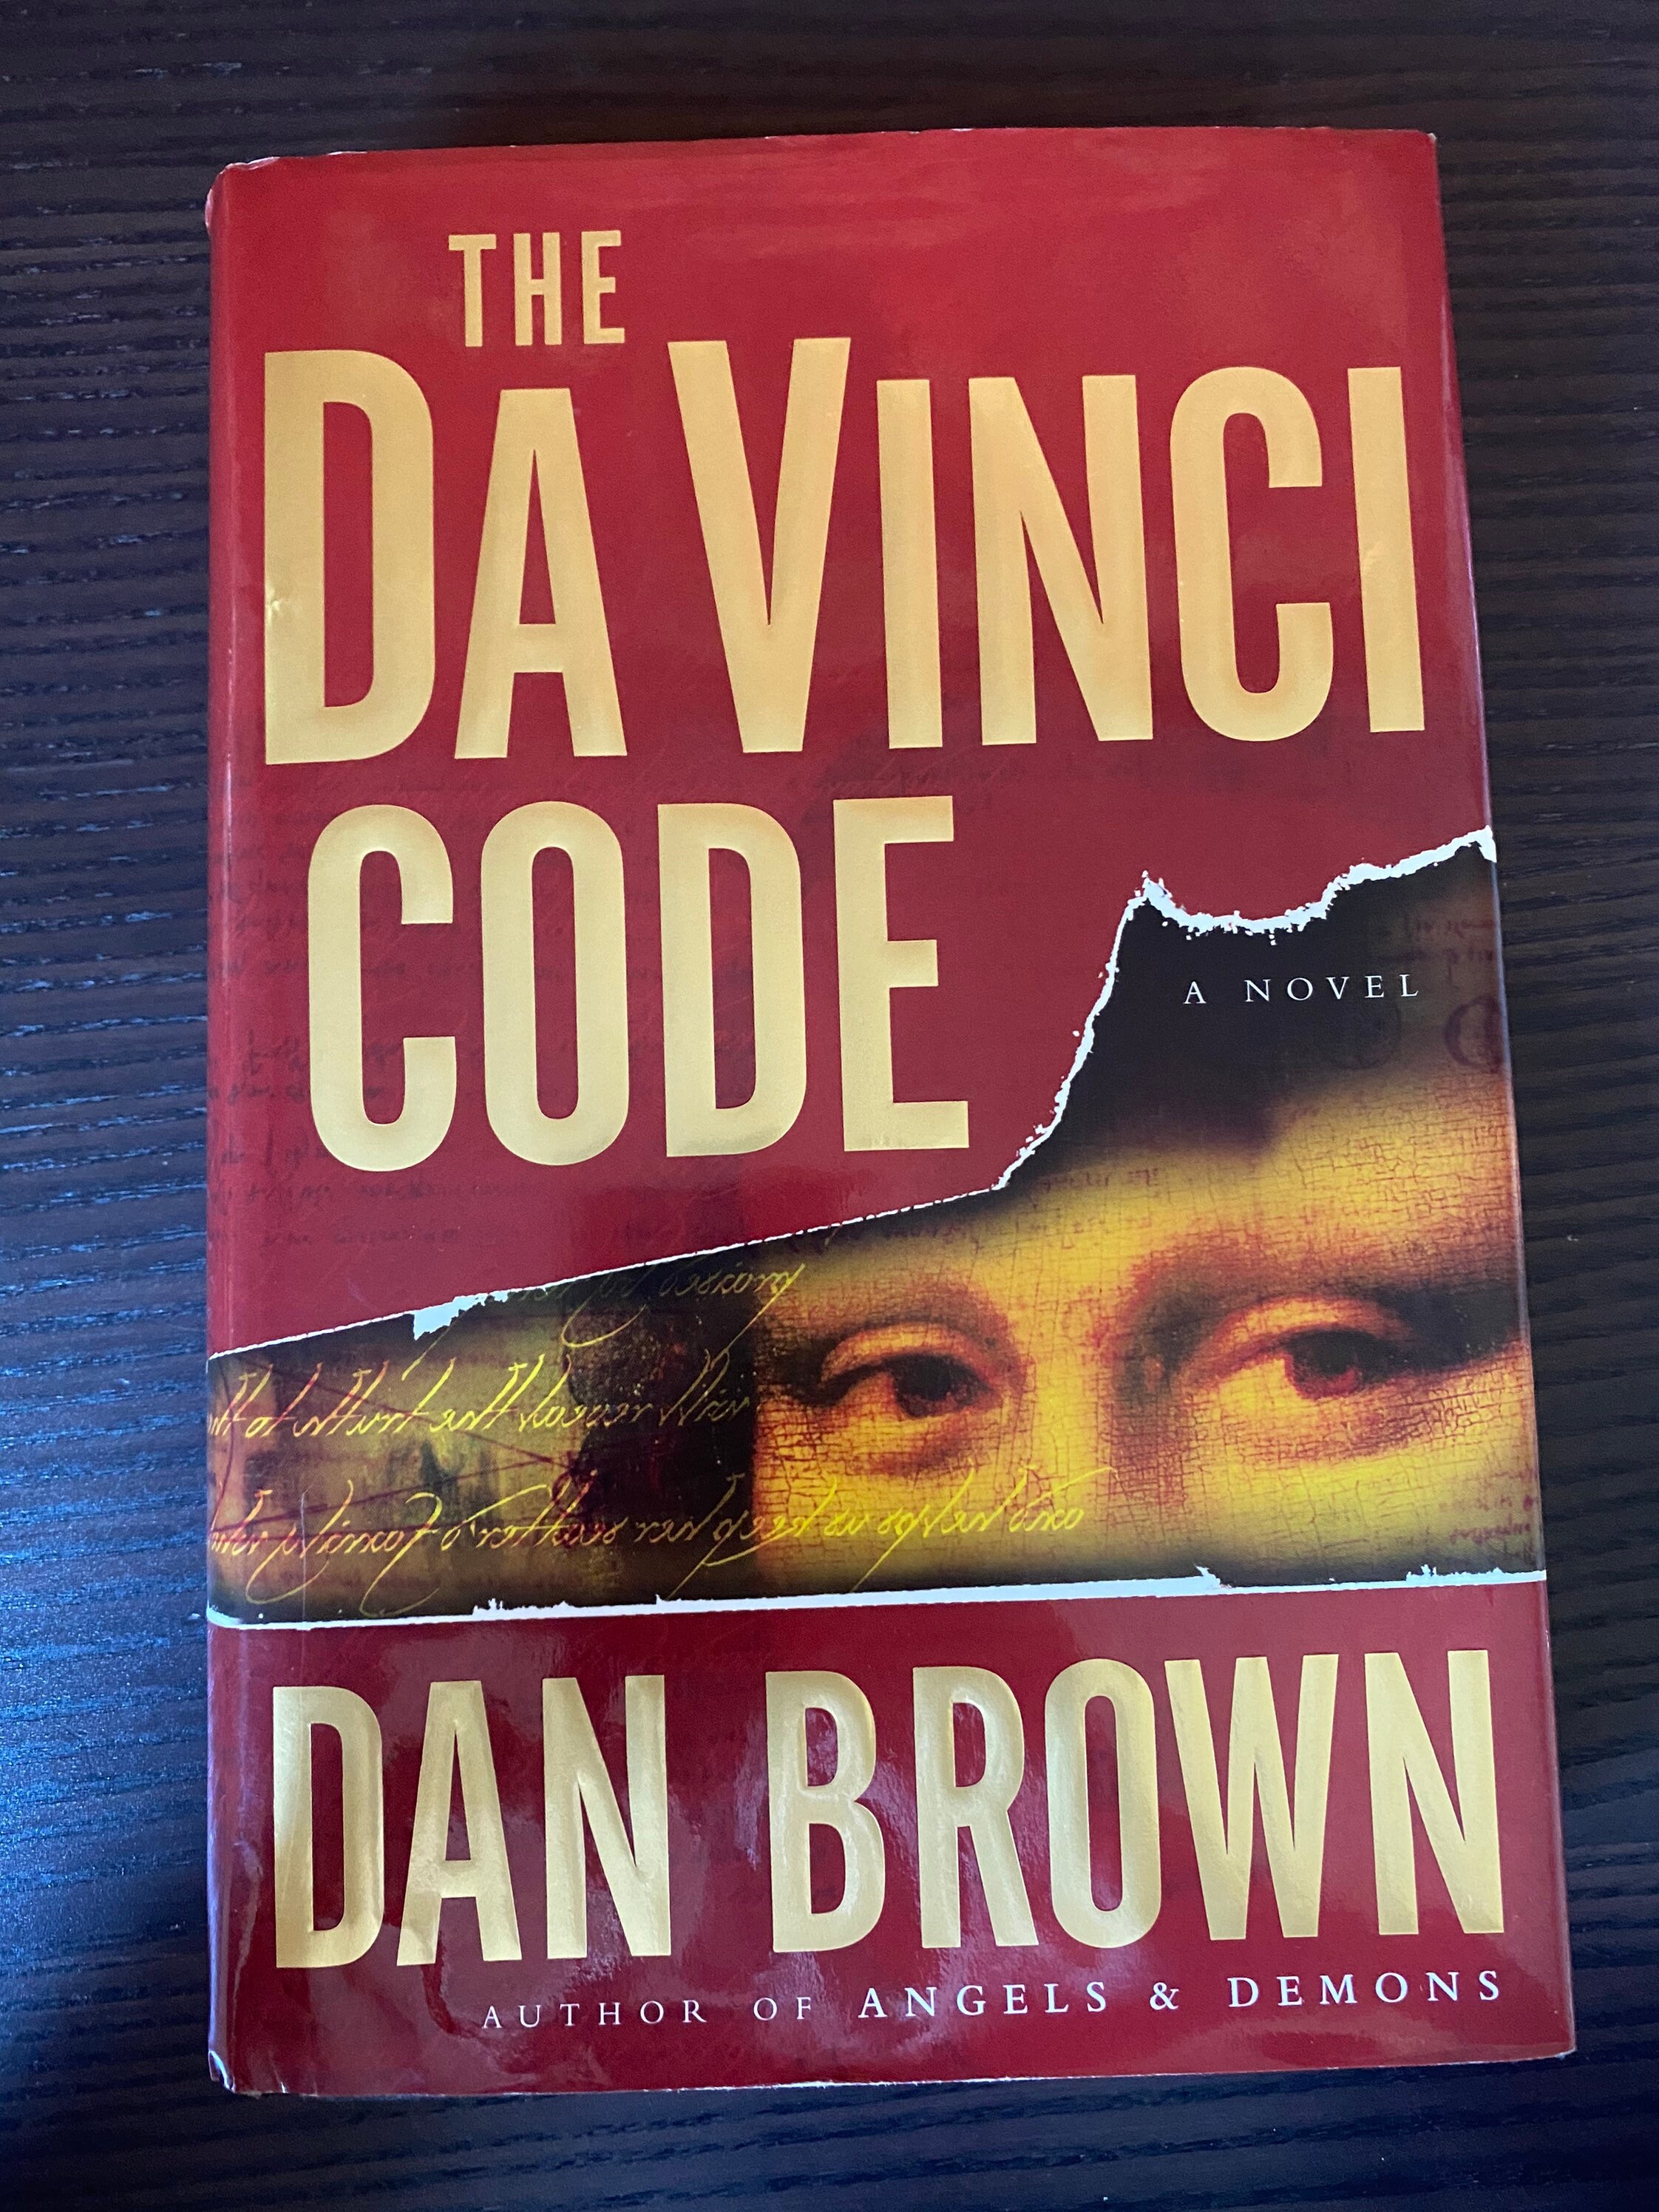 the da vinci code book